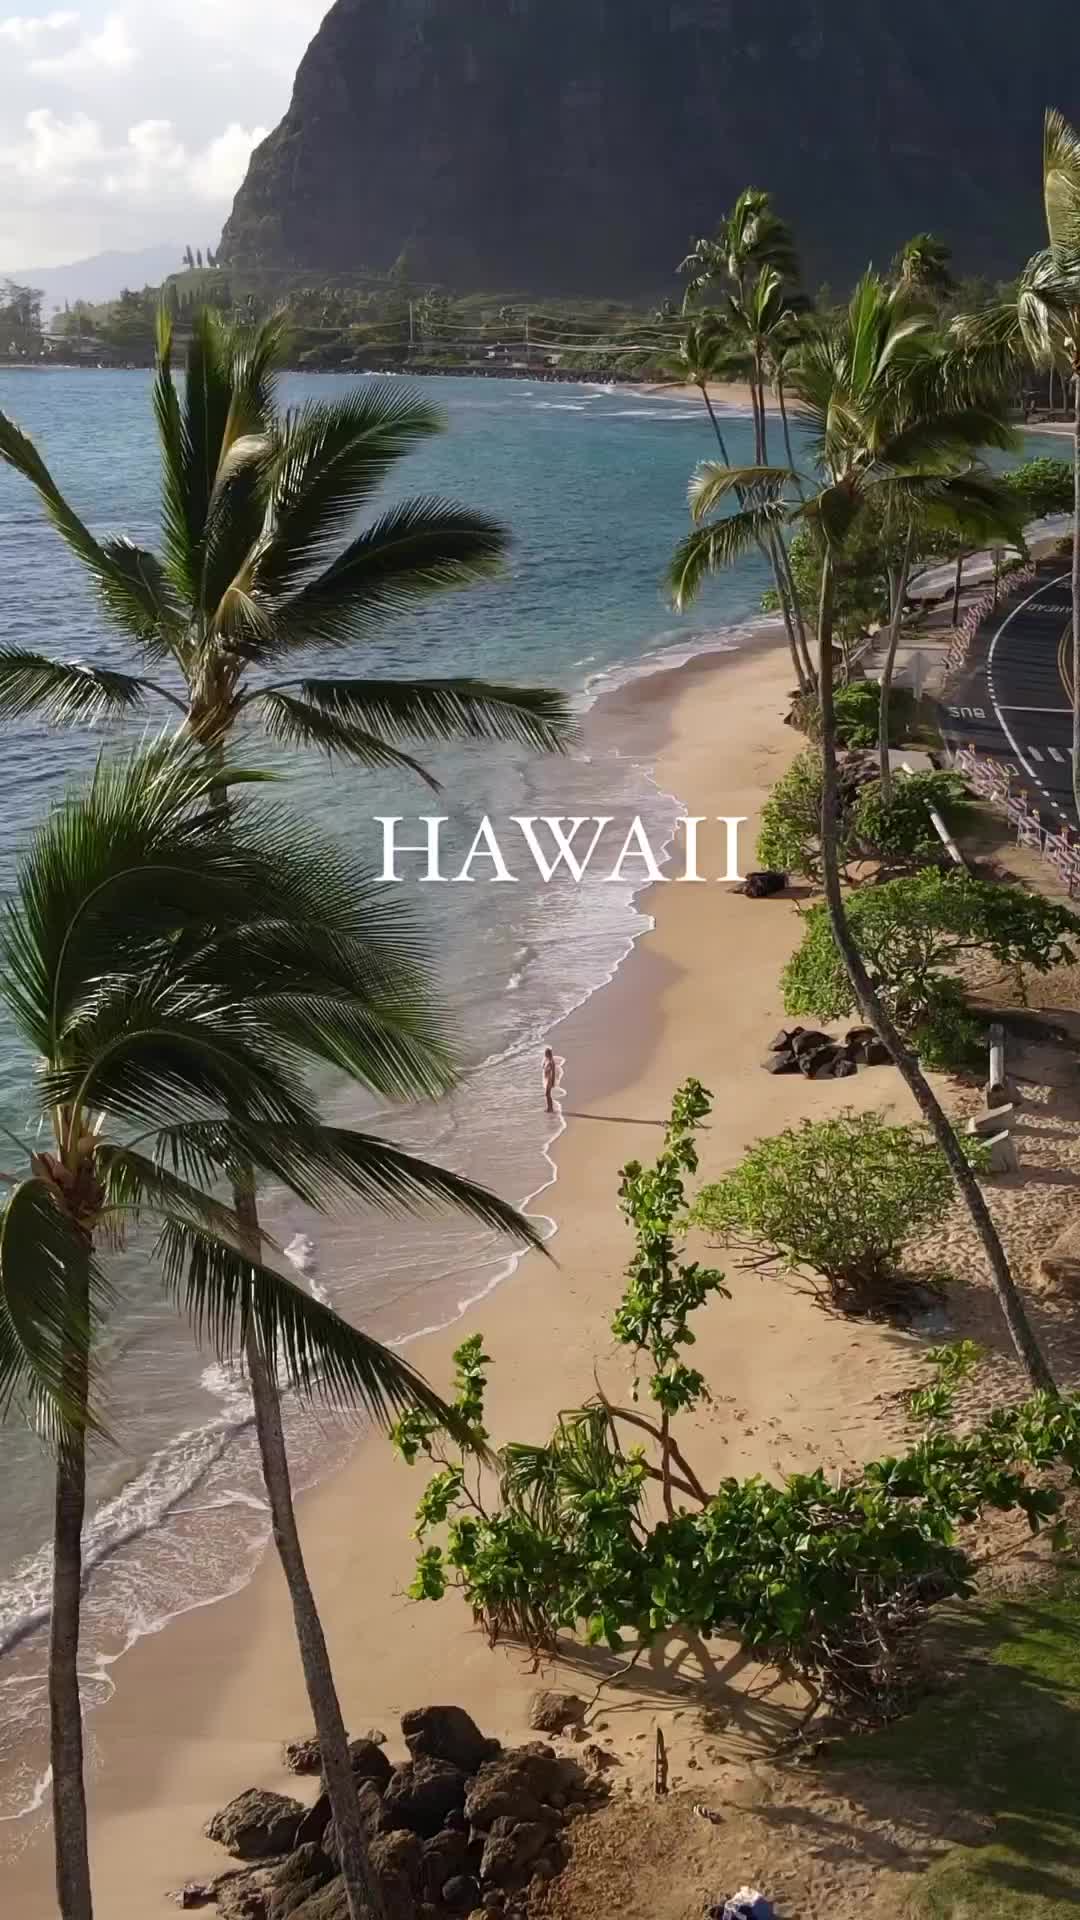 this is Hawaii 🌺⛰️🏄🏽‍♂️🌴
.
.
.
.
.
#hawaii #visithawaii #bucketlist #travel #fyp #inspiration #oahu #bigisland #beautifuldestinations